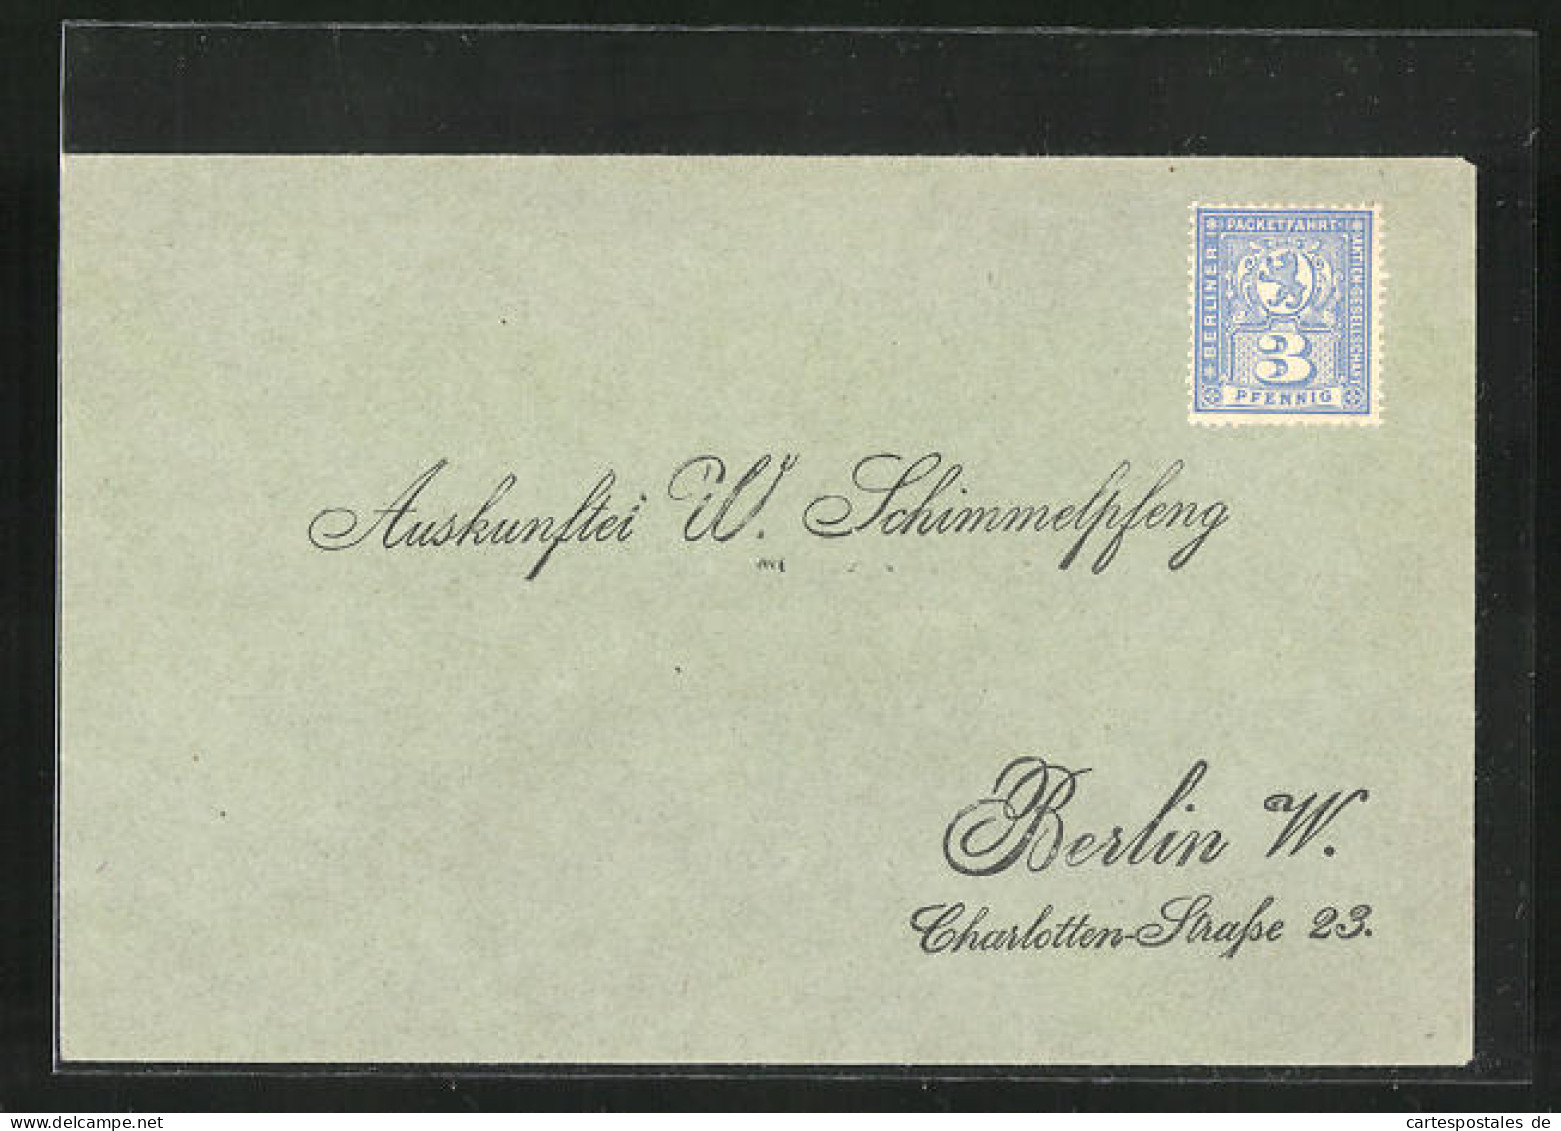 Briefumschlag An Die Auskunftei W. Schimmelpfennig In Berlin, Charlotten-Strasse 23  - Postzegels (afbeeldingen)